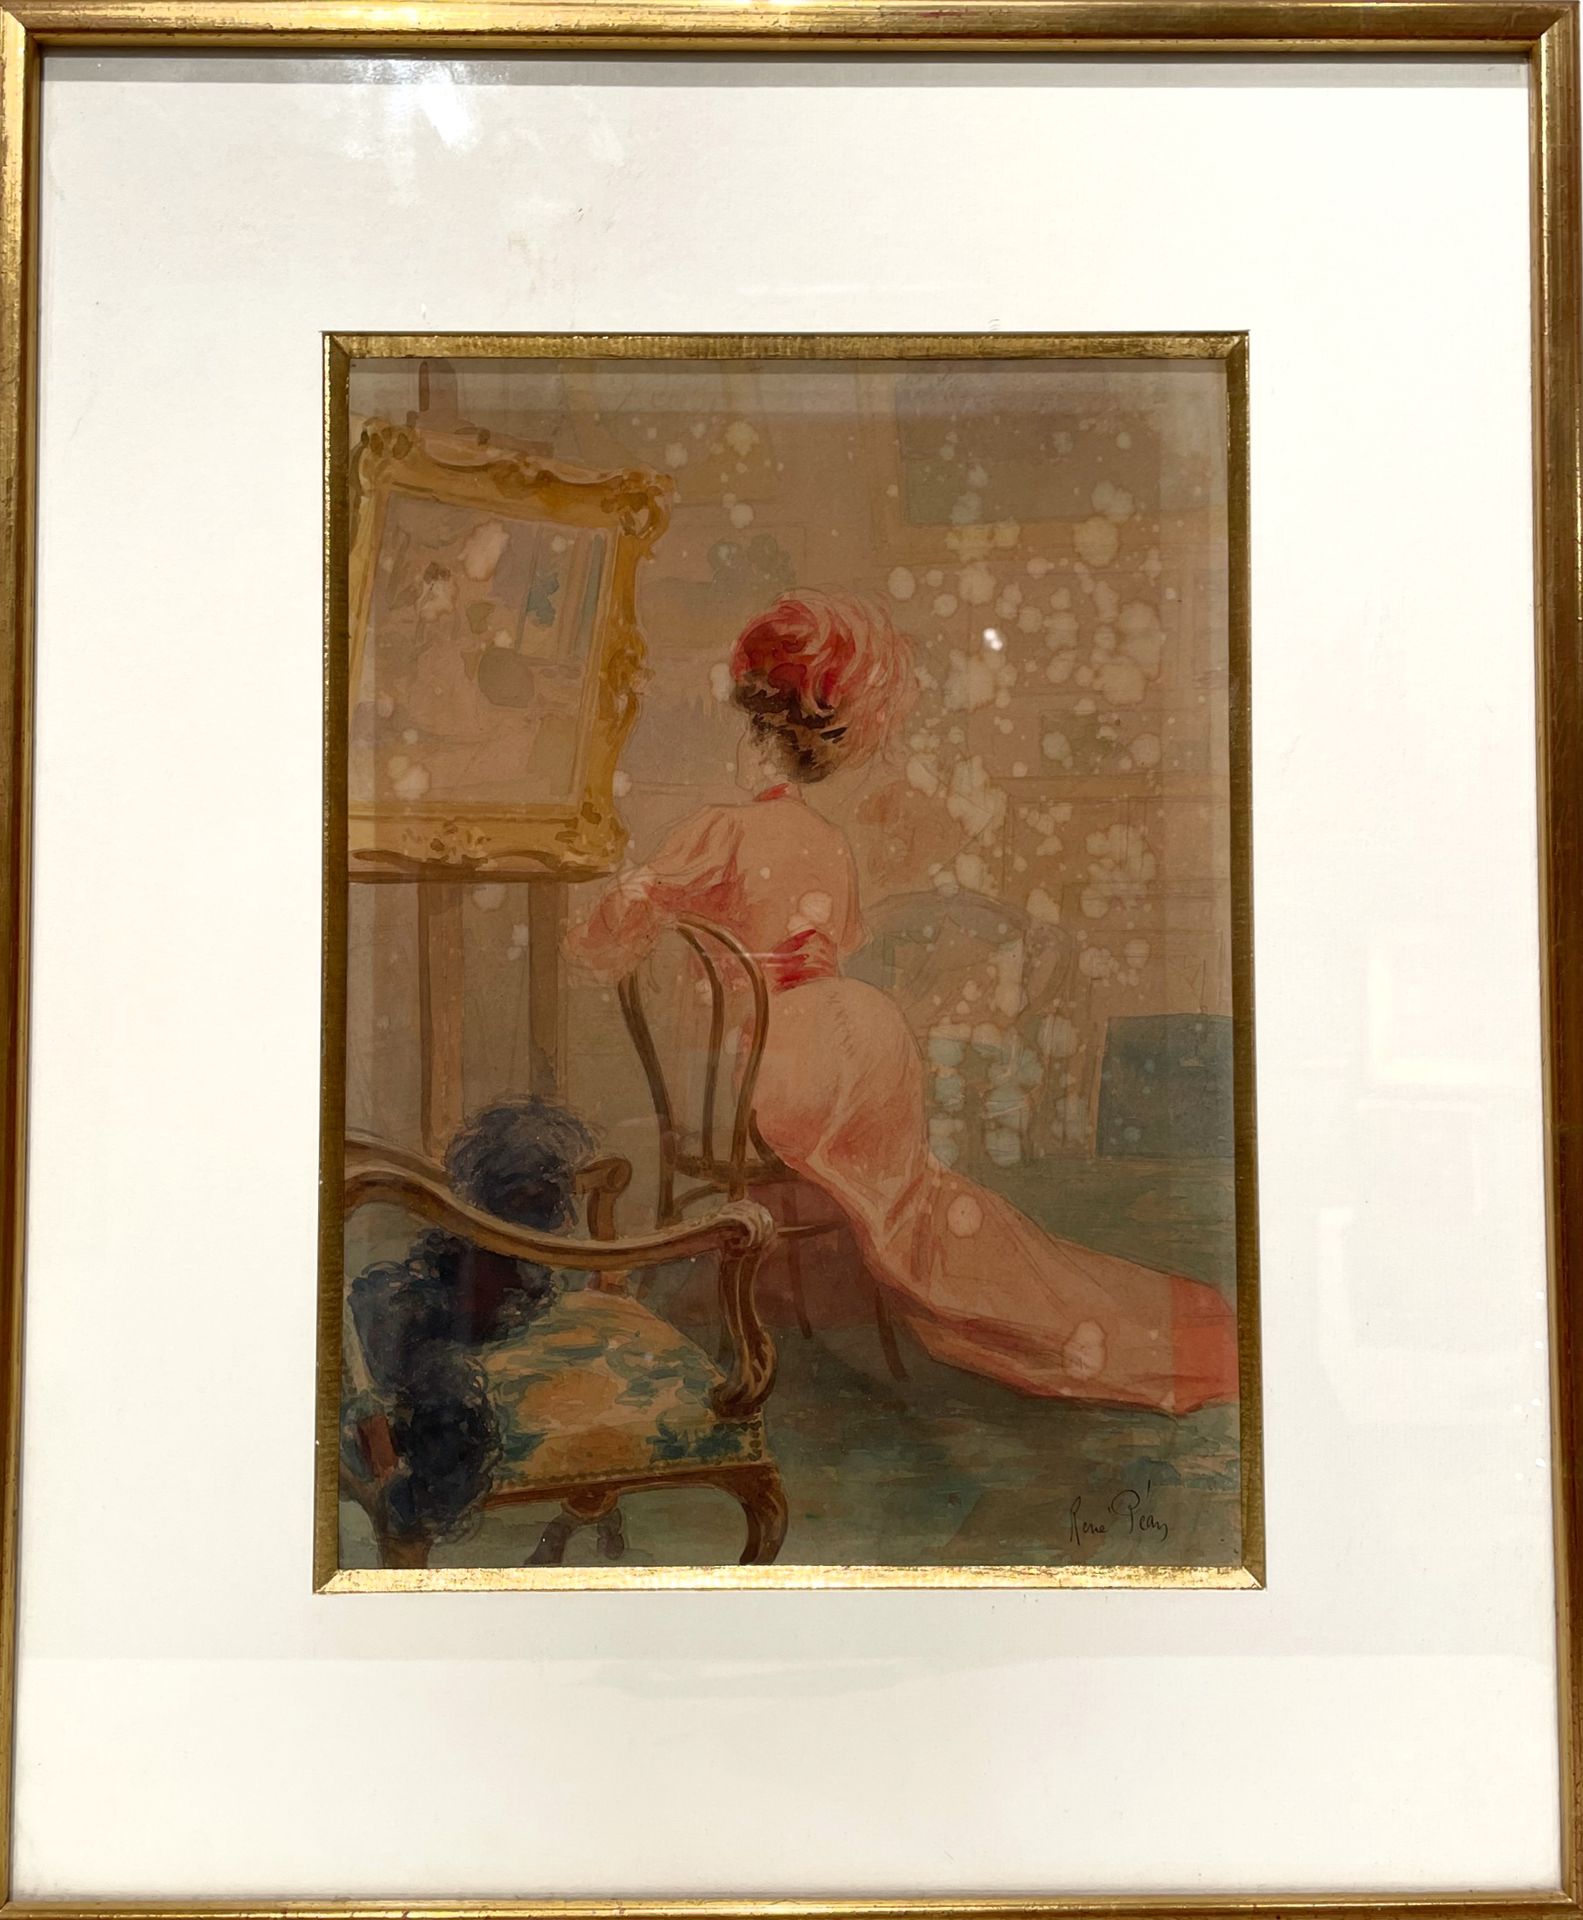 Null René PÉAN (1875-1955)

Galante ammira un quadro 

Acquerello 

30x22 cm